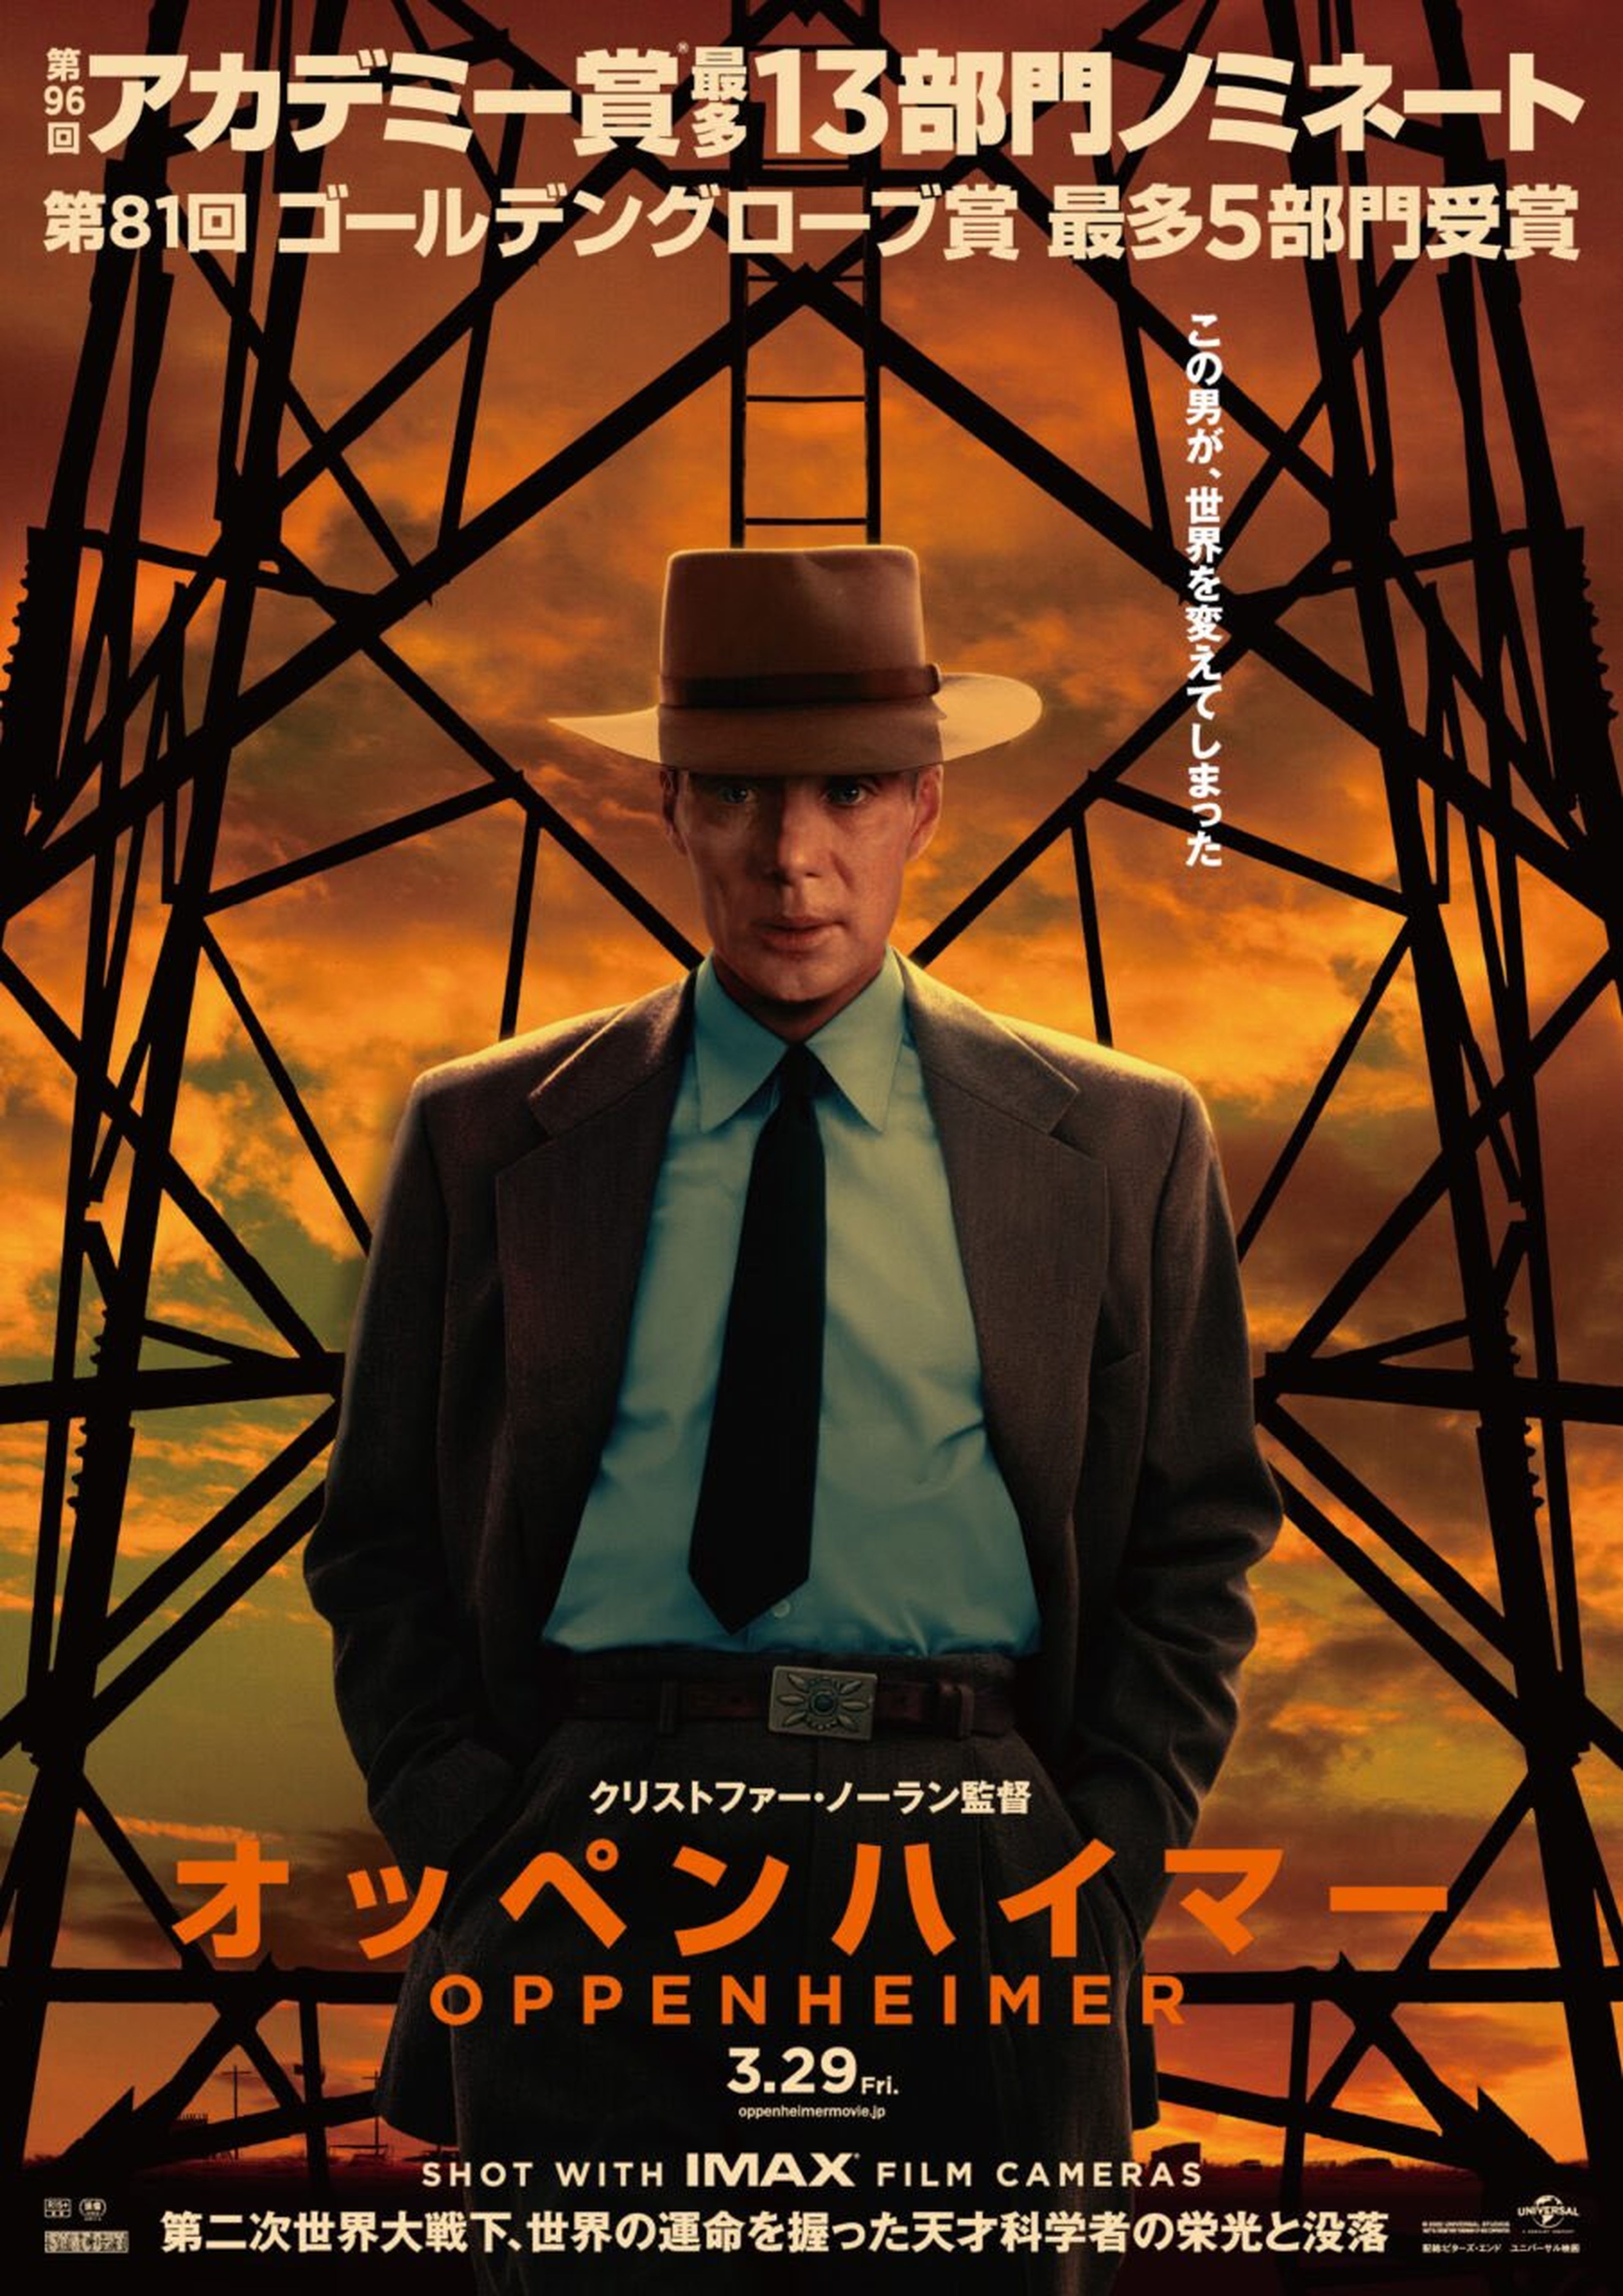 Japón deja entrar al creador de la bomba atómica a sus cines con este nuevo póster japonés de Oppenheimer, la película de Christopher Nolan